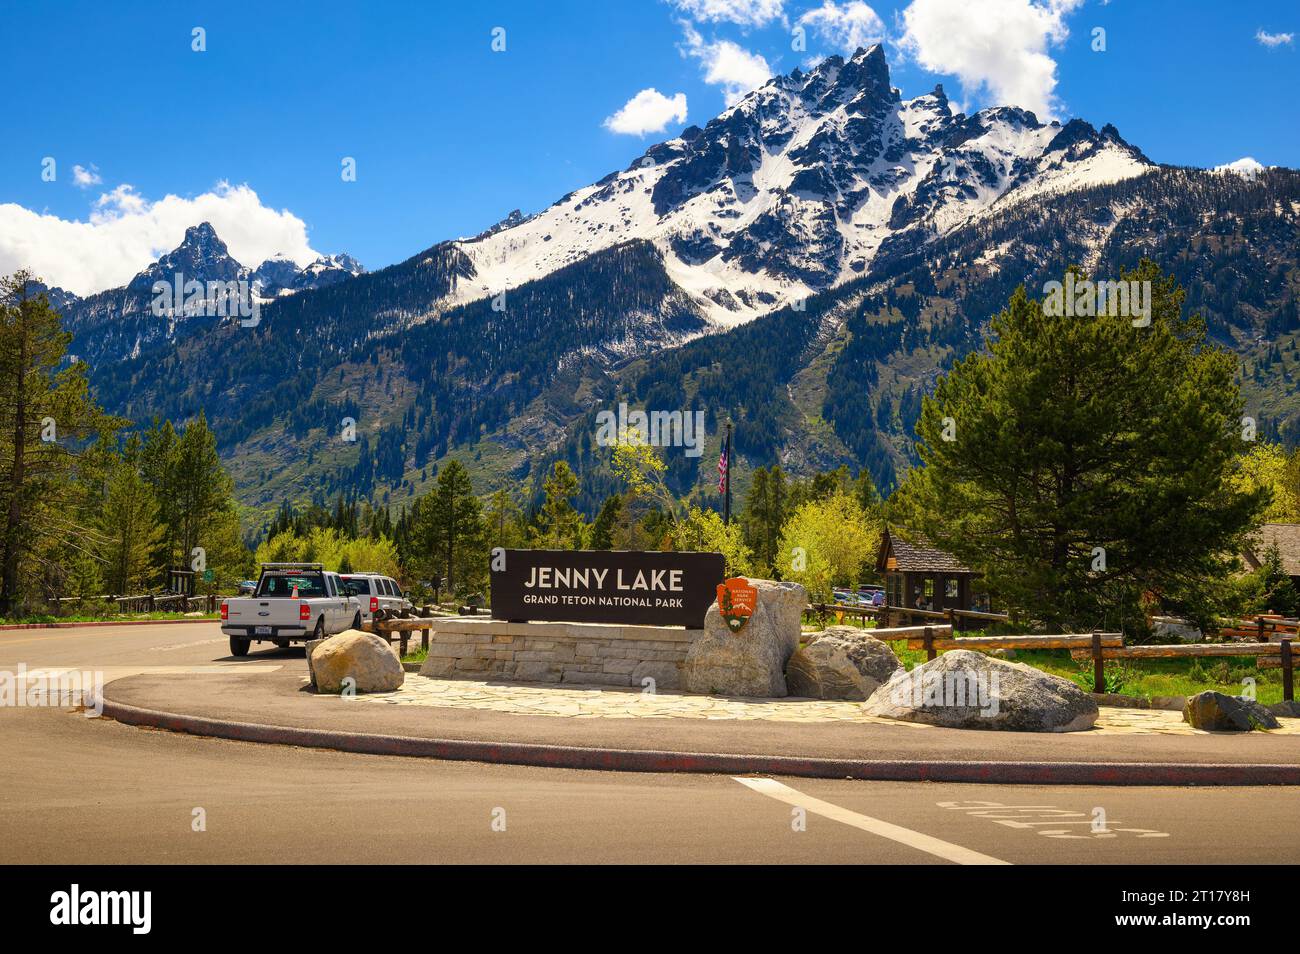 Panneau de bienvenue à l'entrée du lac Jenny dans le parc national de Grand Teton, Wyoming Banque D'Images